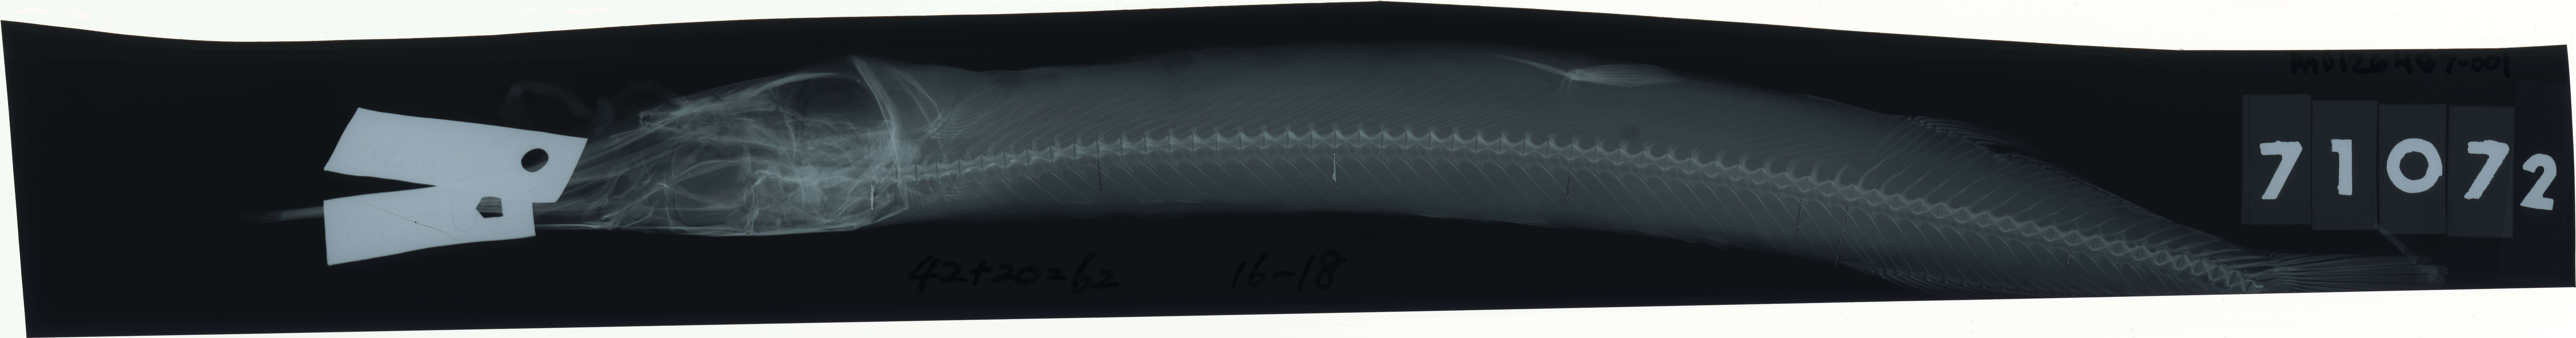 Image of Halfbeak fish